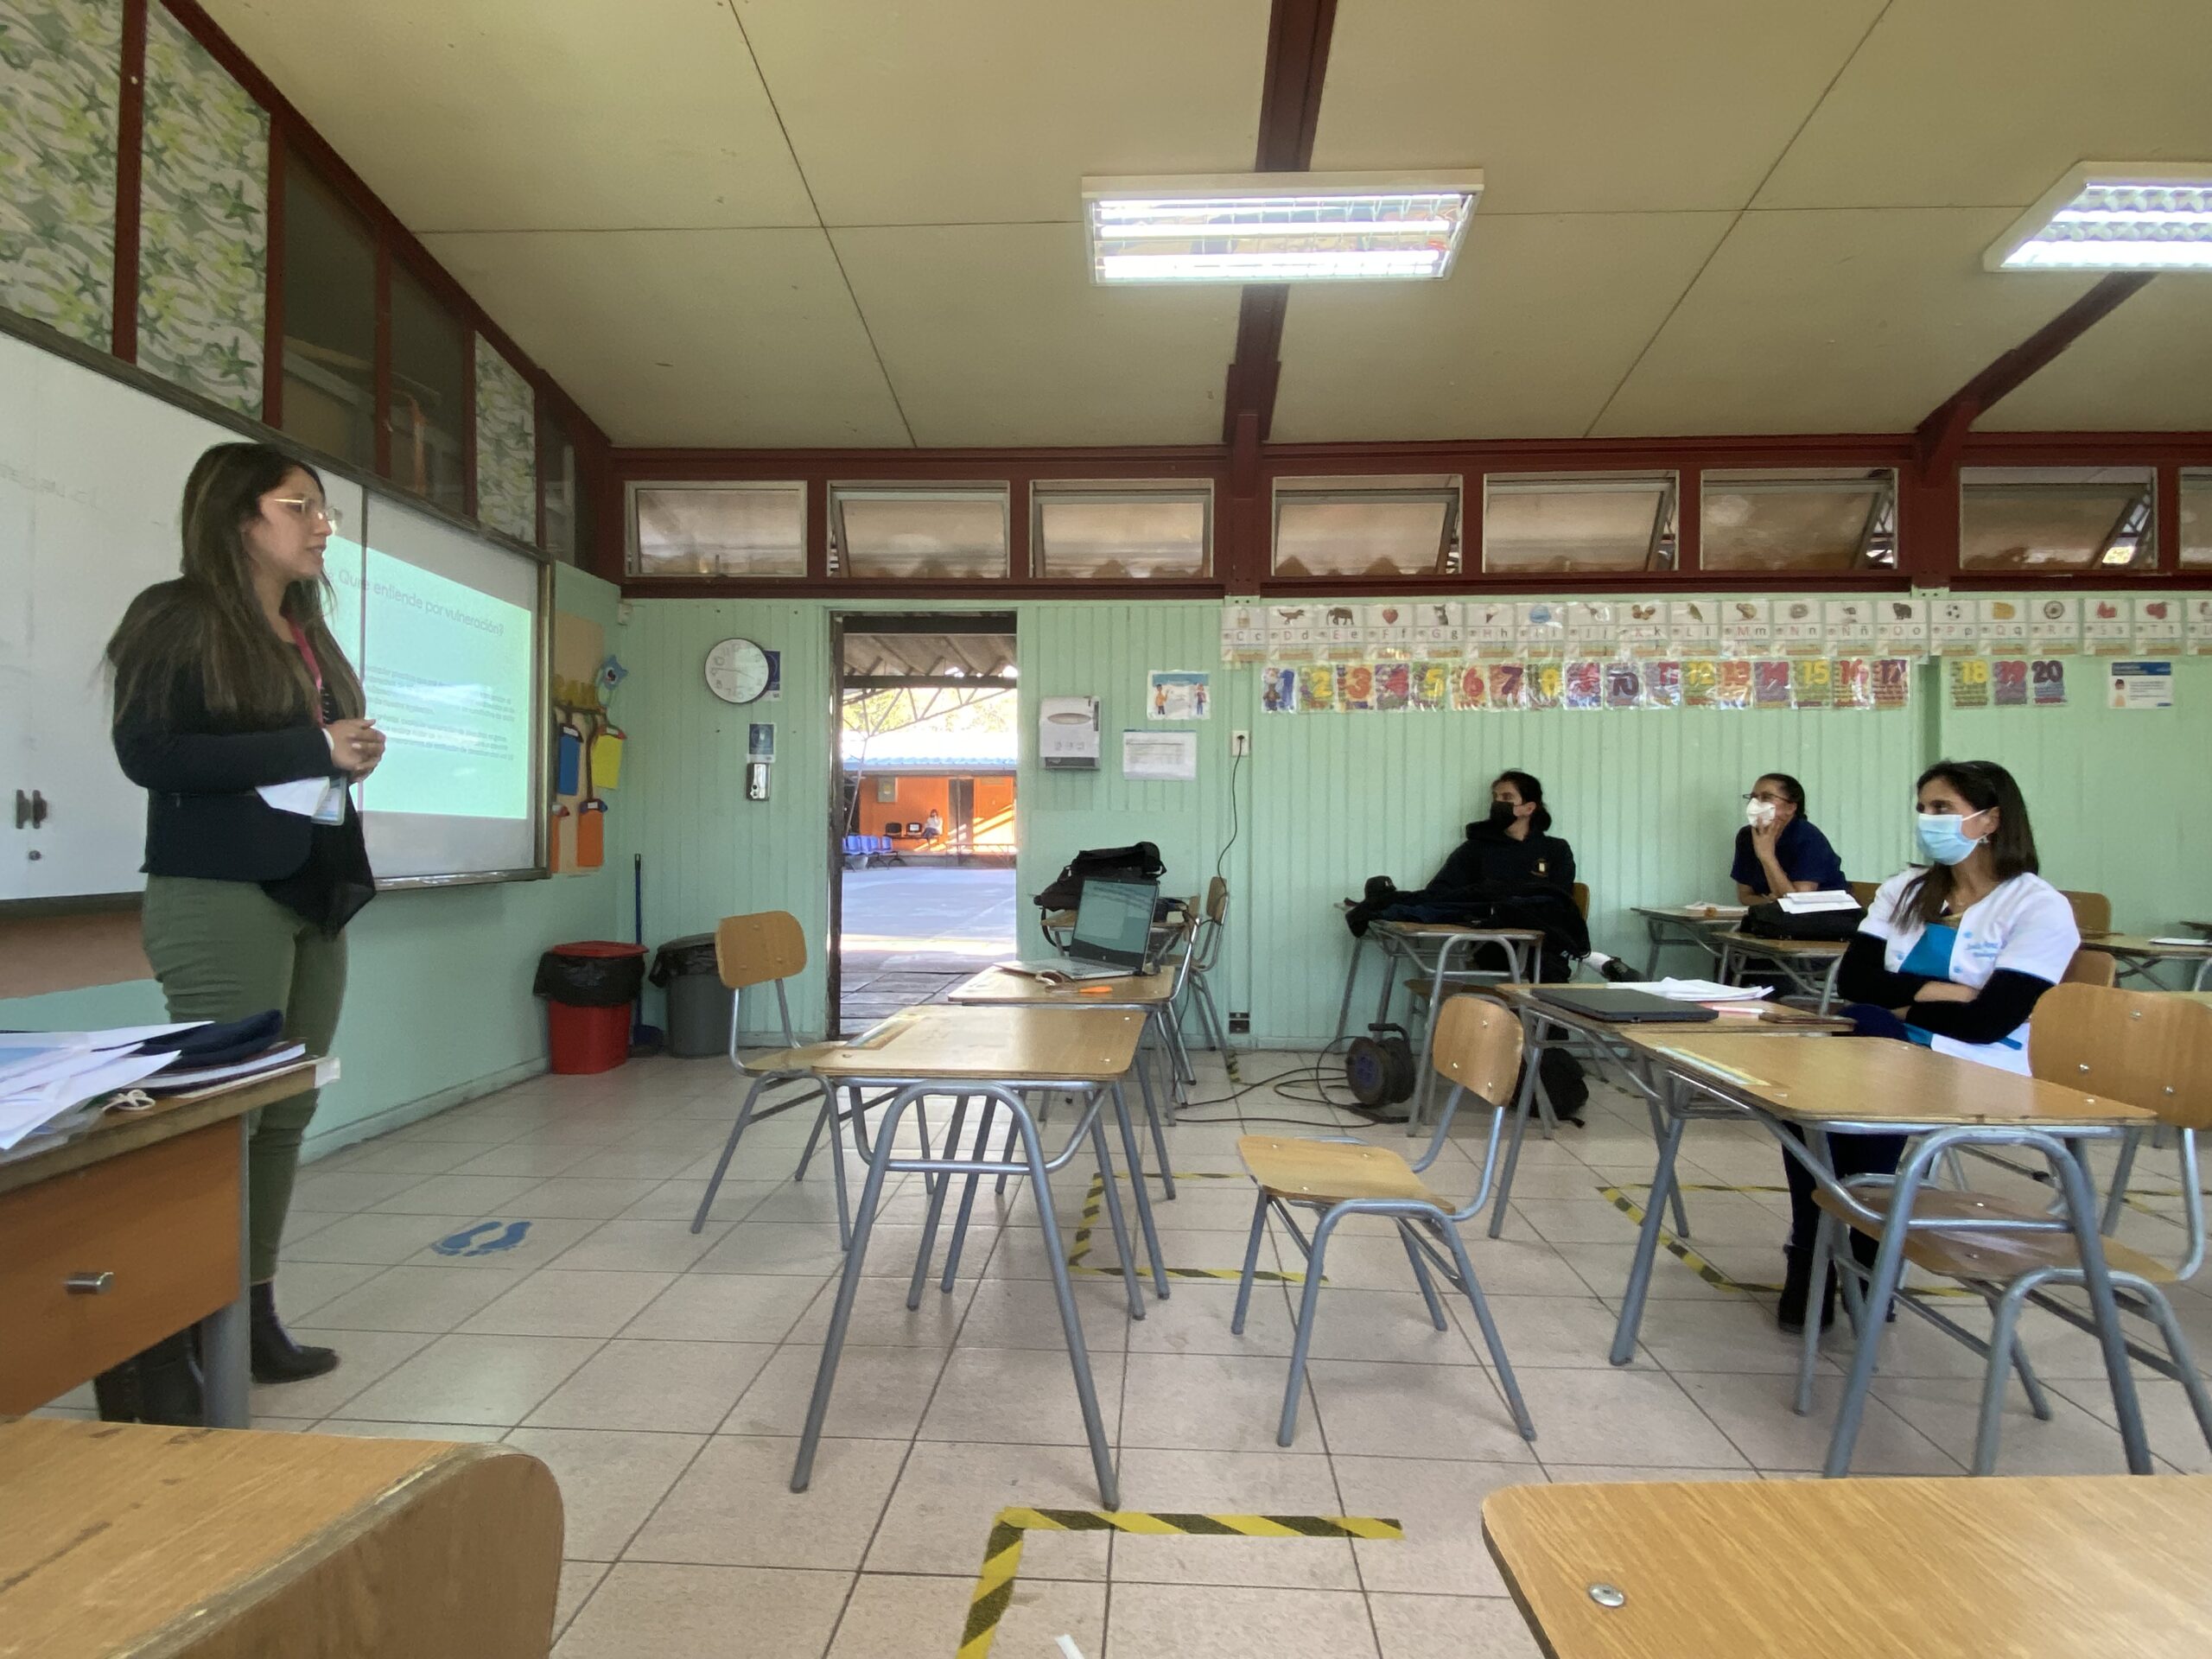 SAN ESTEBAN: Equipo de Convivencia del Departamento de Educación Municipal de San Esteban, dicta charla denominada “Vulneración de Derechos”